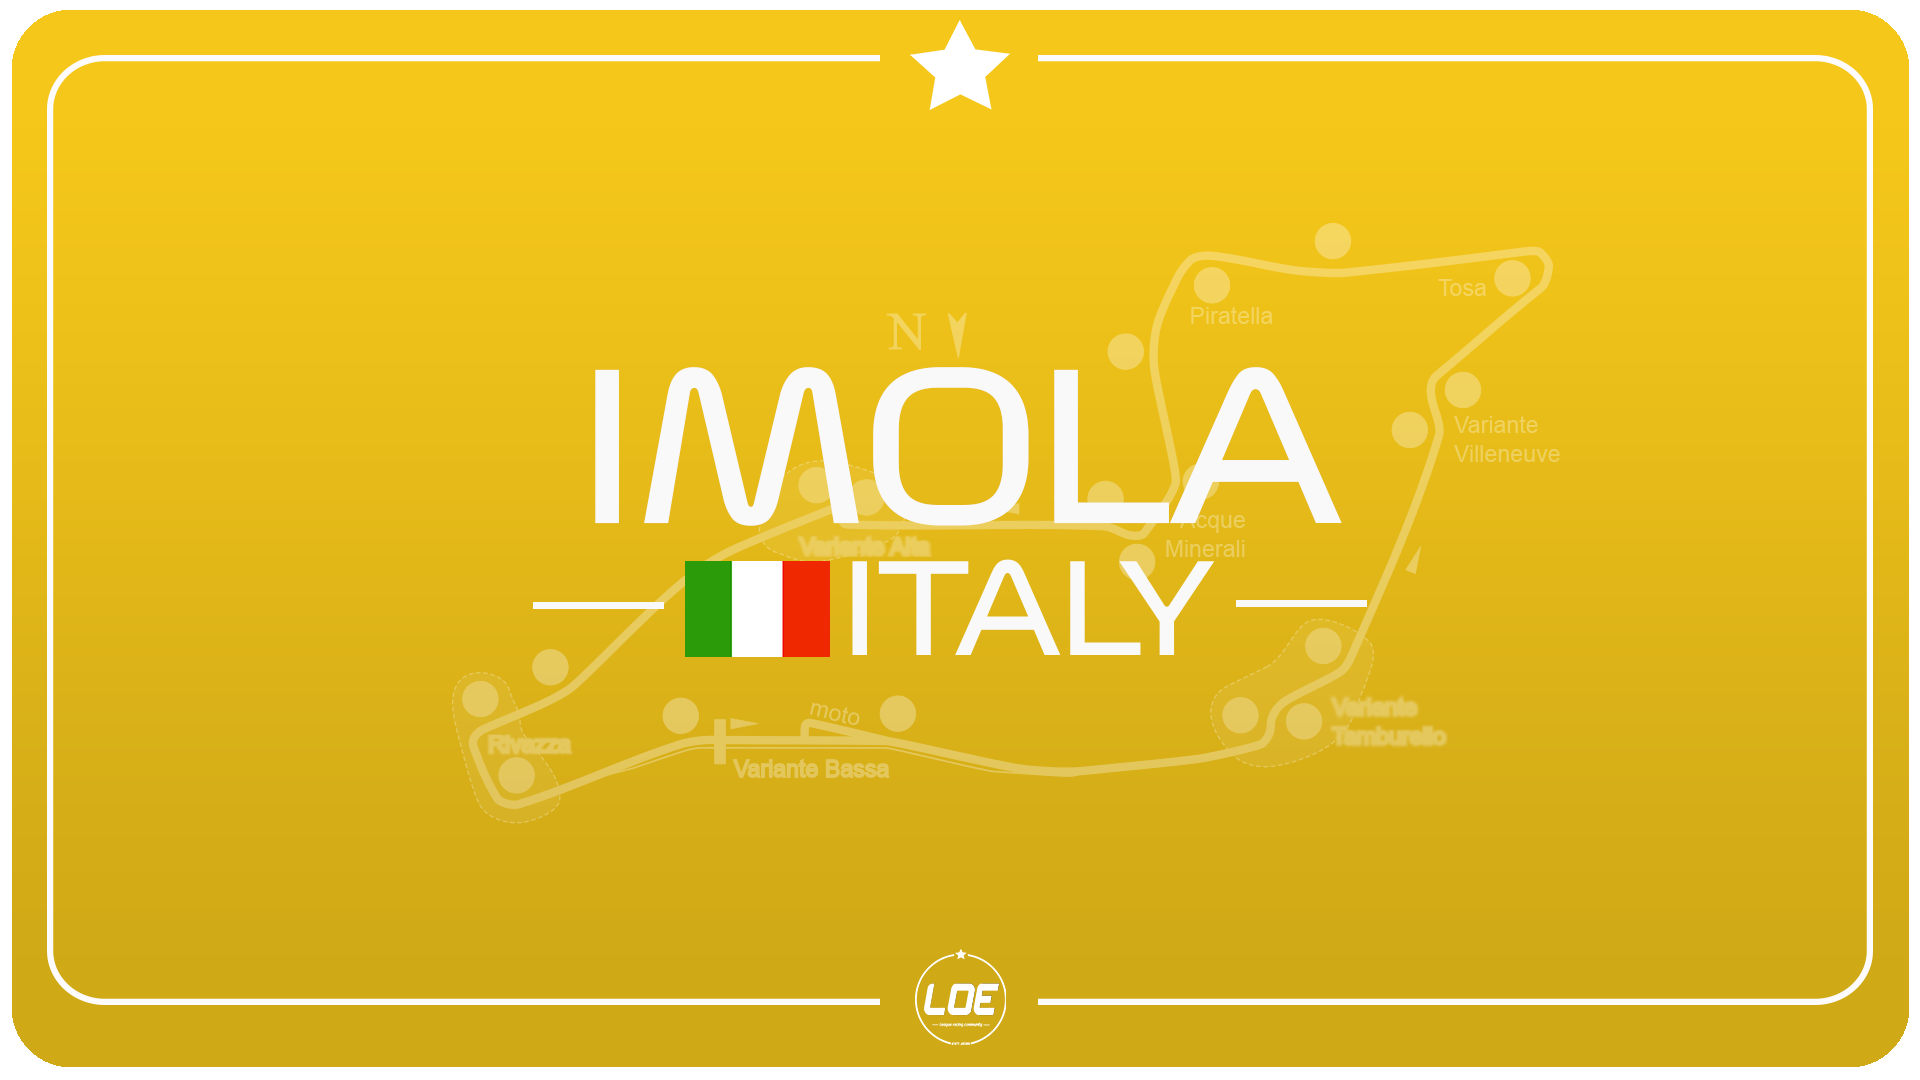 Round 12 Imola